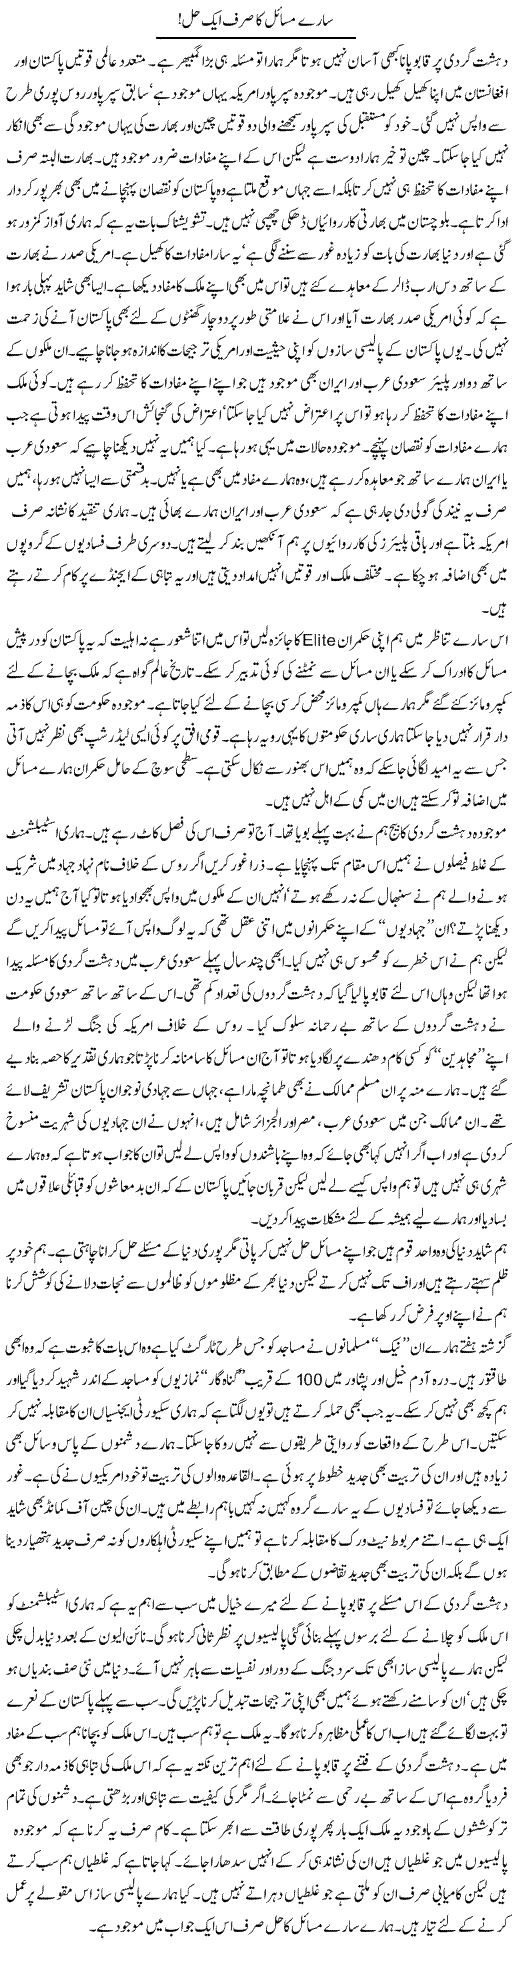 Solution of All Problems Express Column Iyaz Khan 9 November 2010